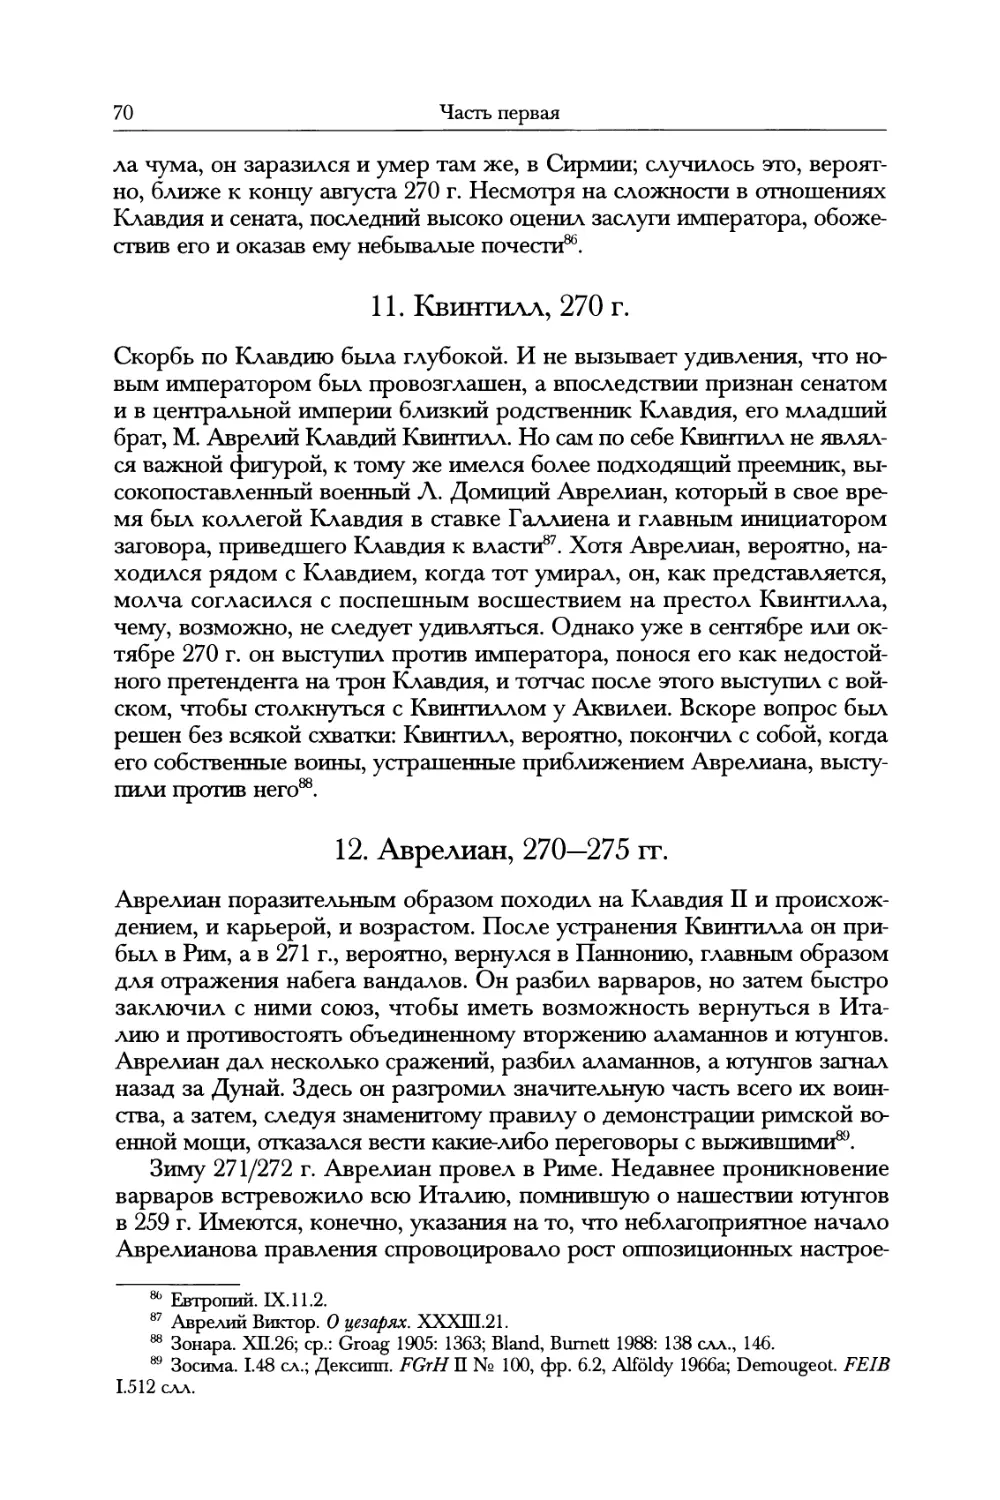 11. Квинтилл, 270 г.
12. Аврелиан, 270—275 гг.